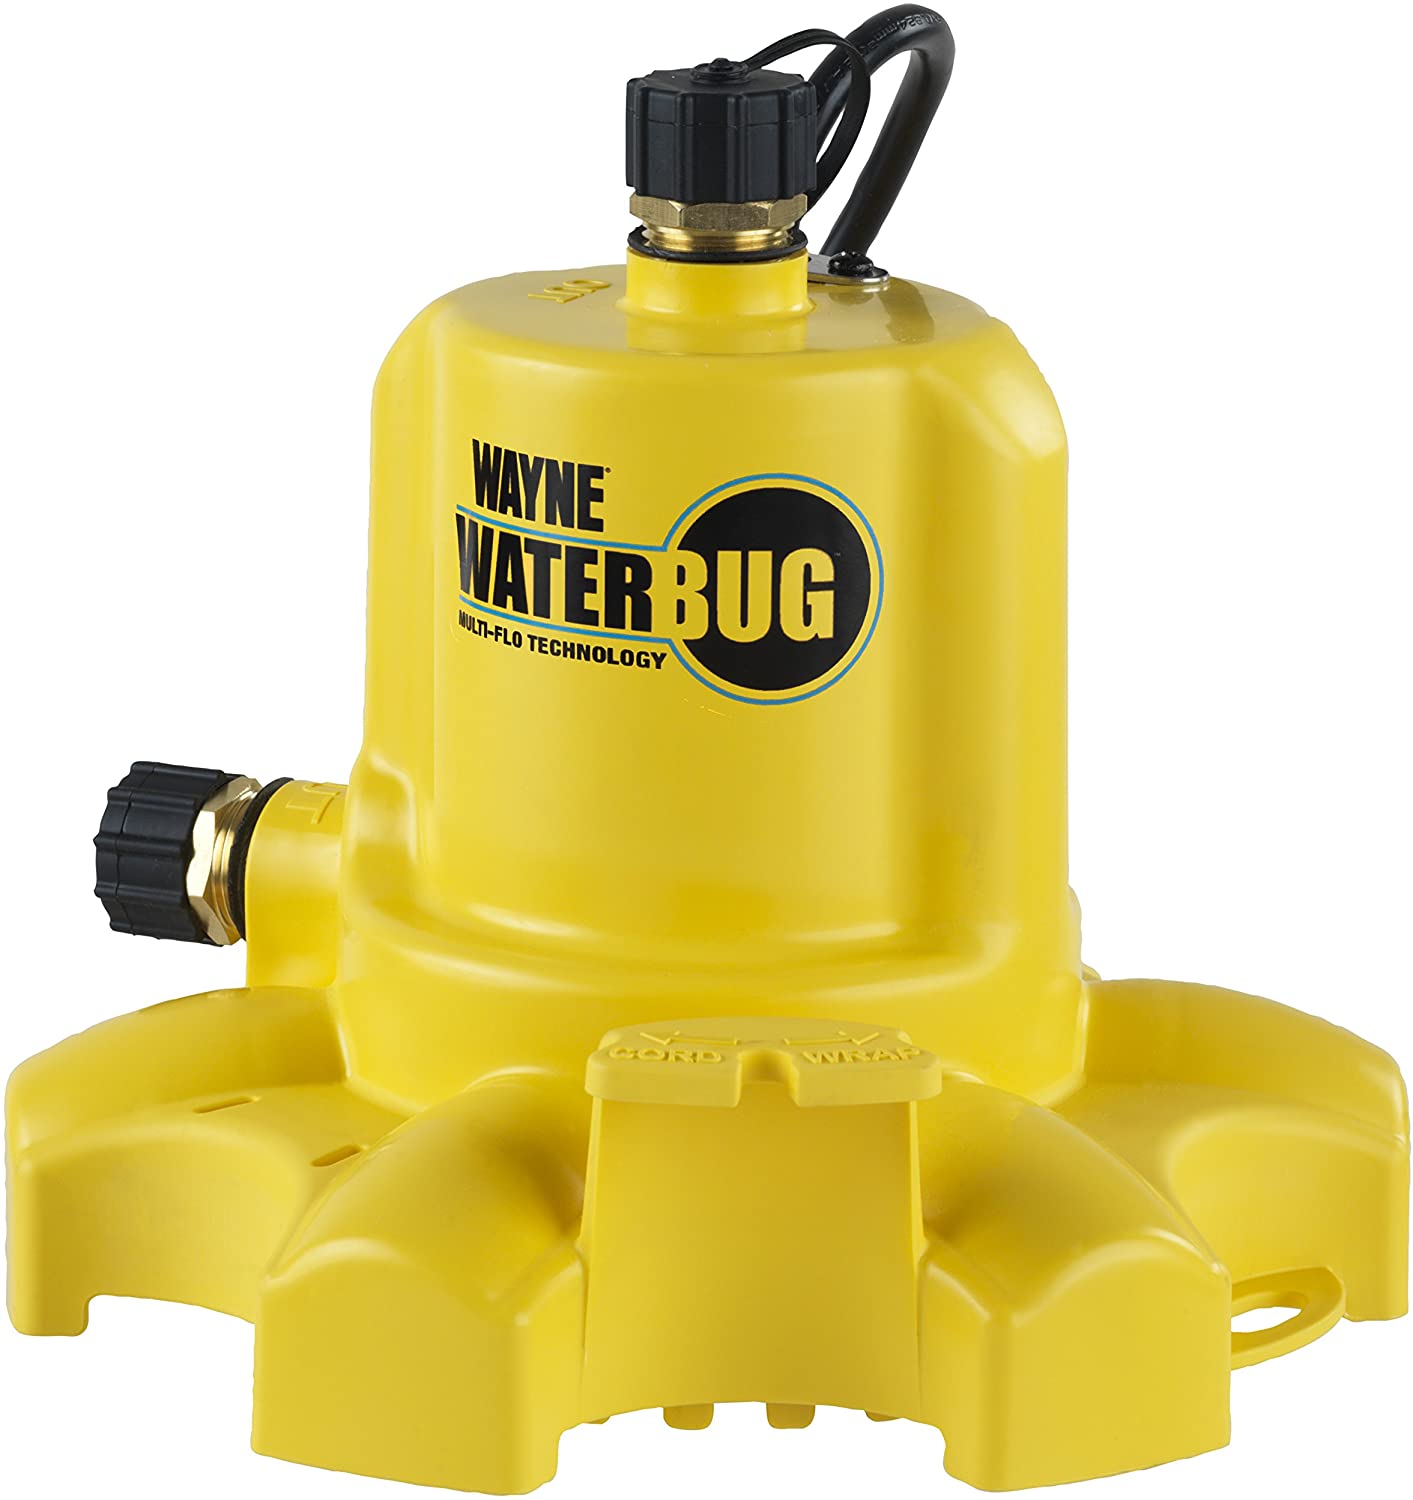 WAYNE WWB WaterBUG Submersible Pump